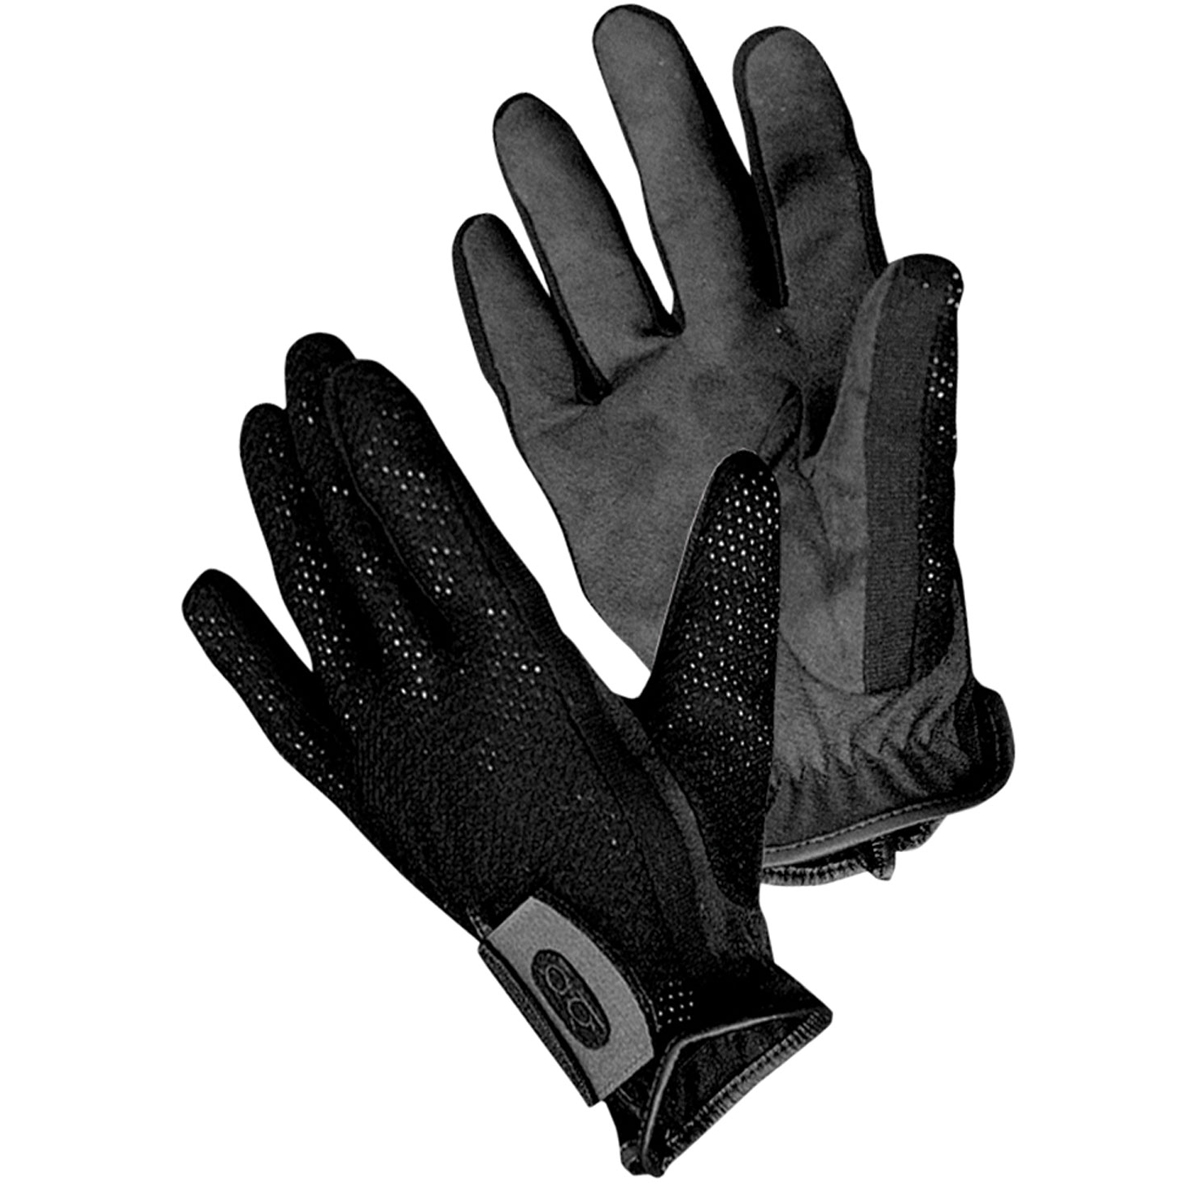 Bob Allen Shotgunner Shooting Gloves, Black, Large